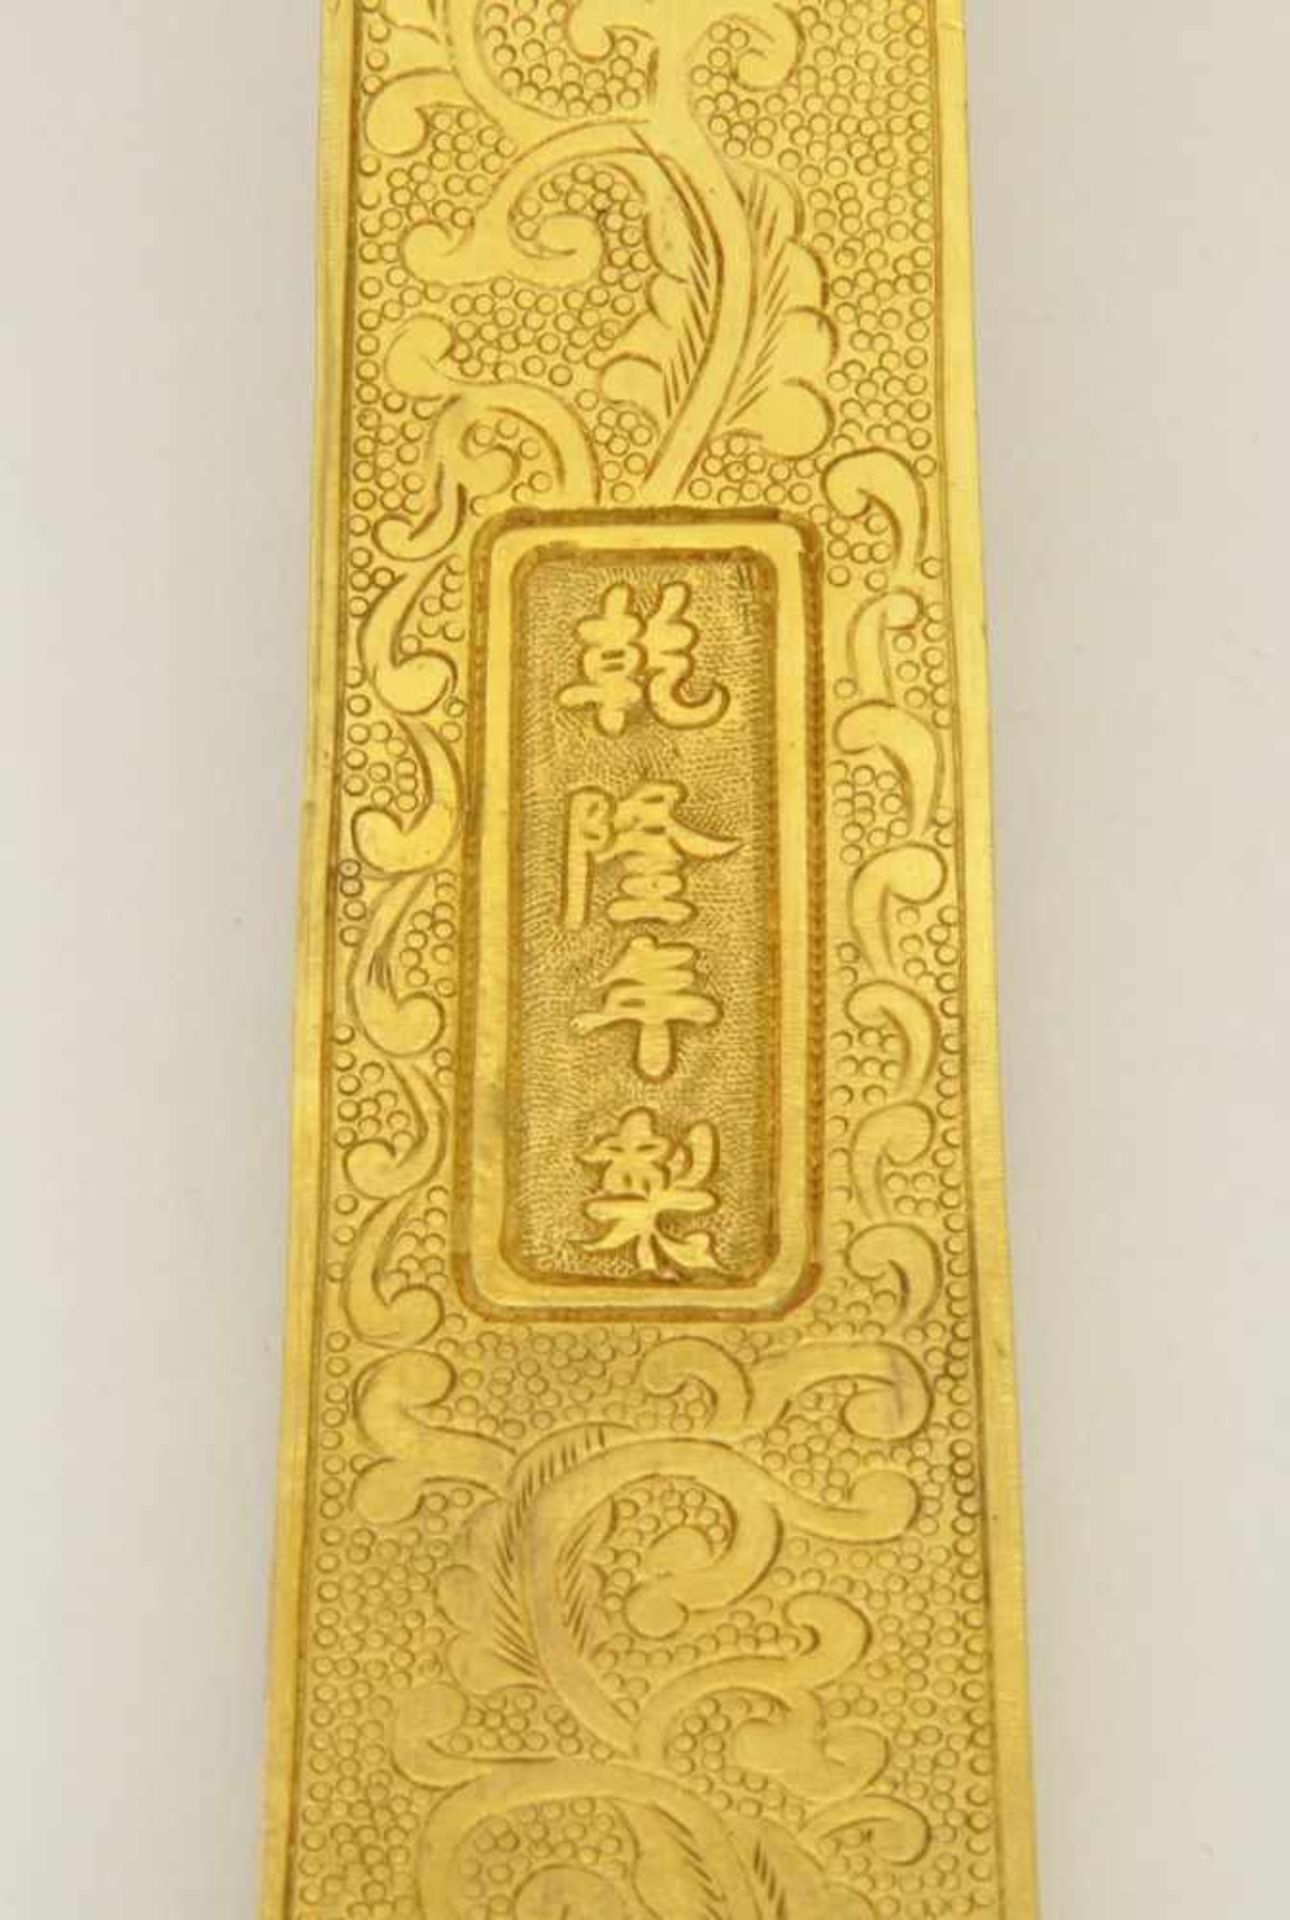 Ruyi - Zepter China, ganzflächig ziseliert, vergoldet, wolkenförmiges Oberteil mit Einlage aus Jade, - Bild 5 aus 5